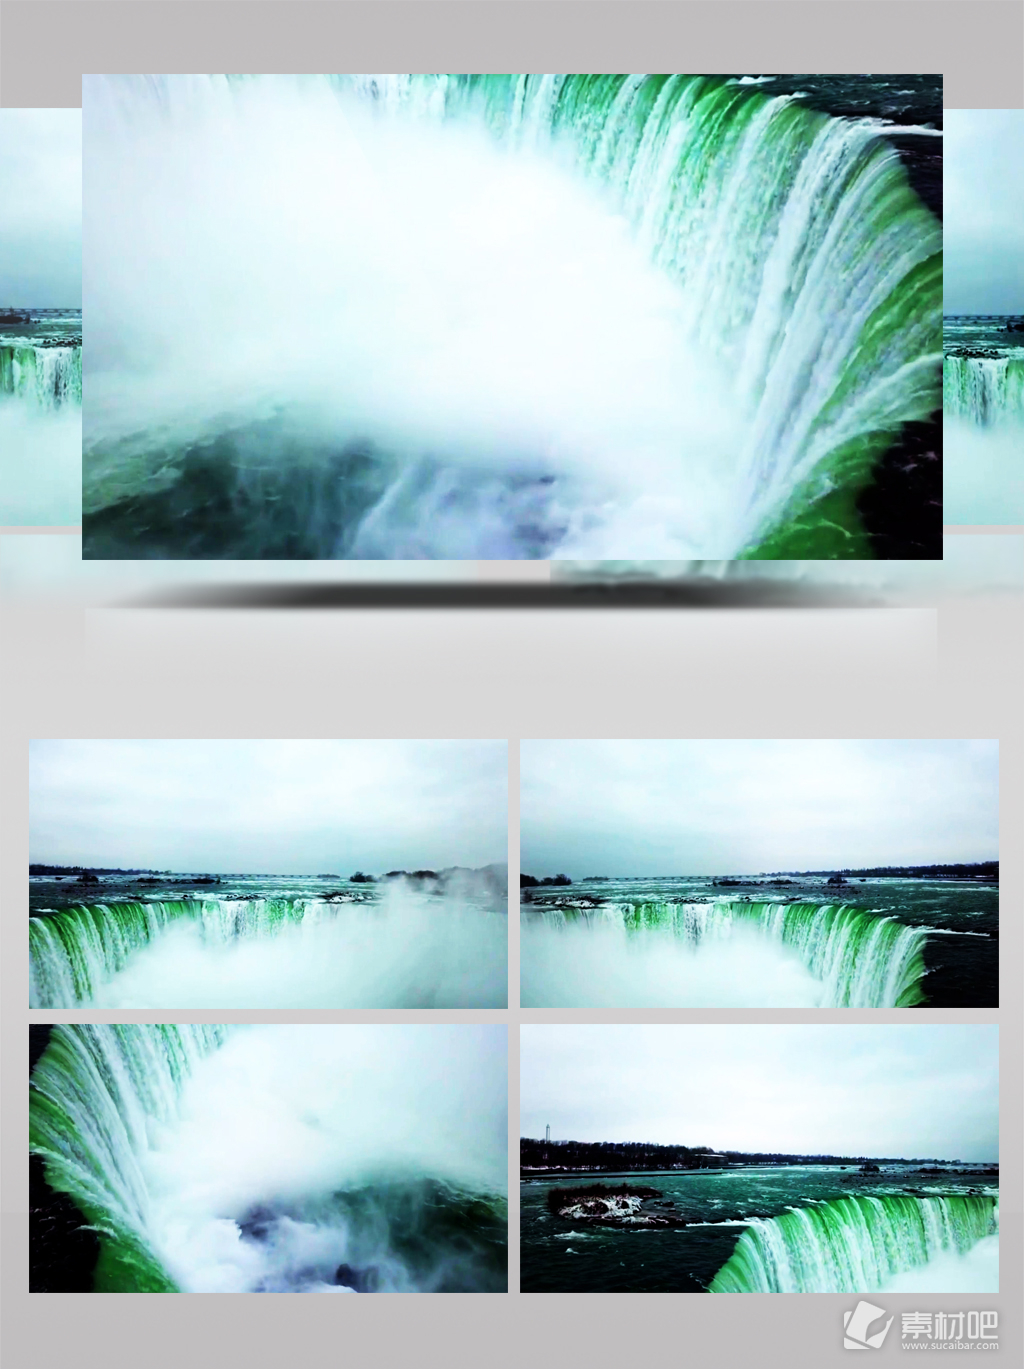 壮观的尼亚加拉瀑布风景视频